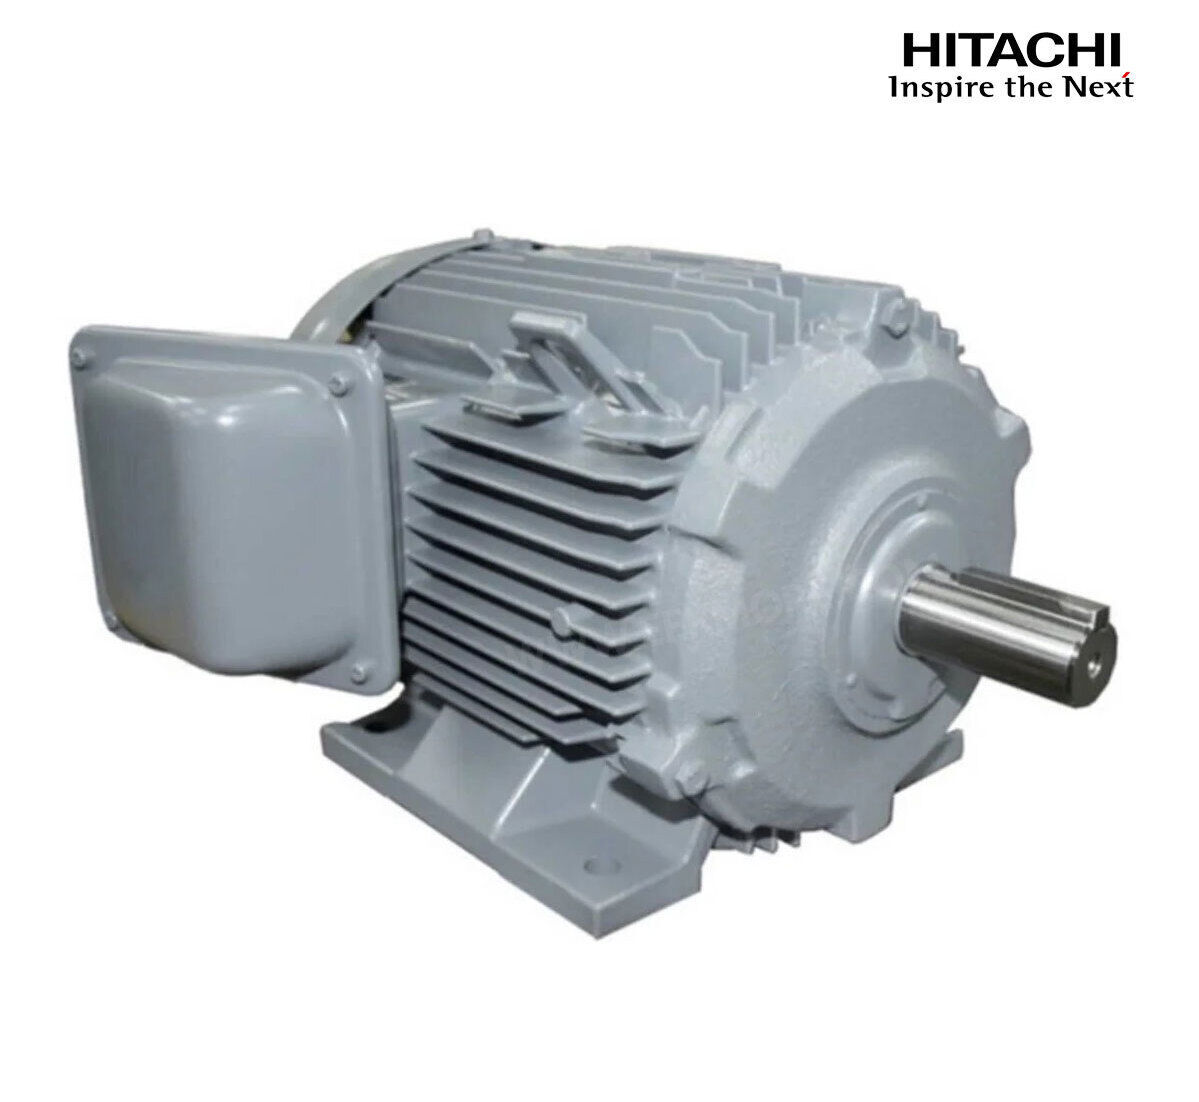 มอเตอร์ฮิตาชิของแท้ 100% HITACHI รุ่น TFO-KK กำลัง 15 แรงม้า (11 KW.) กำลังไฟฟ้าที่ใช้ 380V ความเร็วรอบตัวเปล่า 1450 RPM แกนเพลามอเตอร์ 42 MM.รับประกัน 3 ปี มีของพร้อมจัดส่งทุกวัน